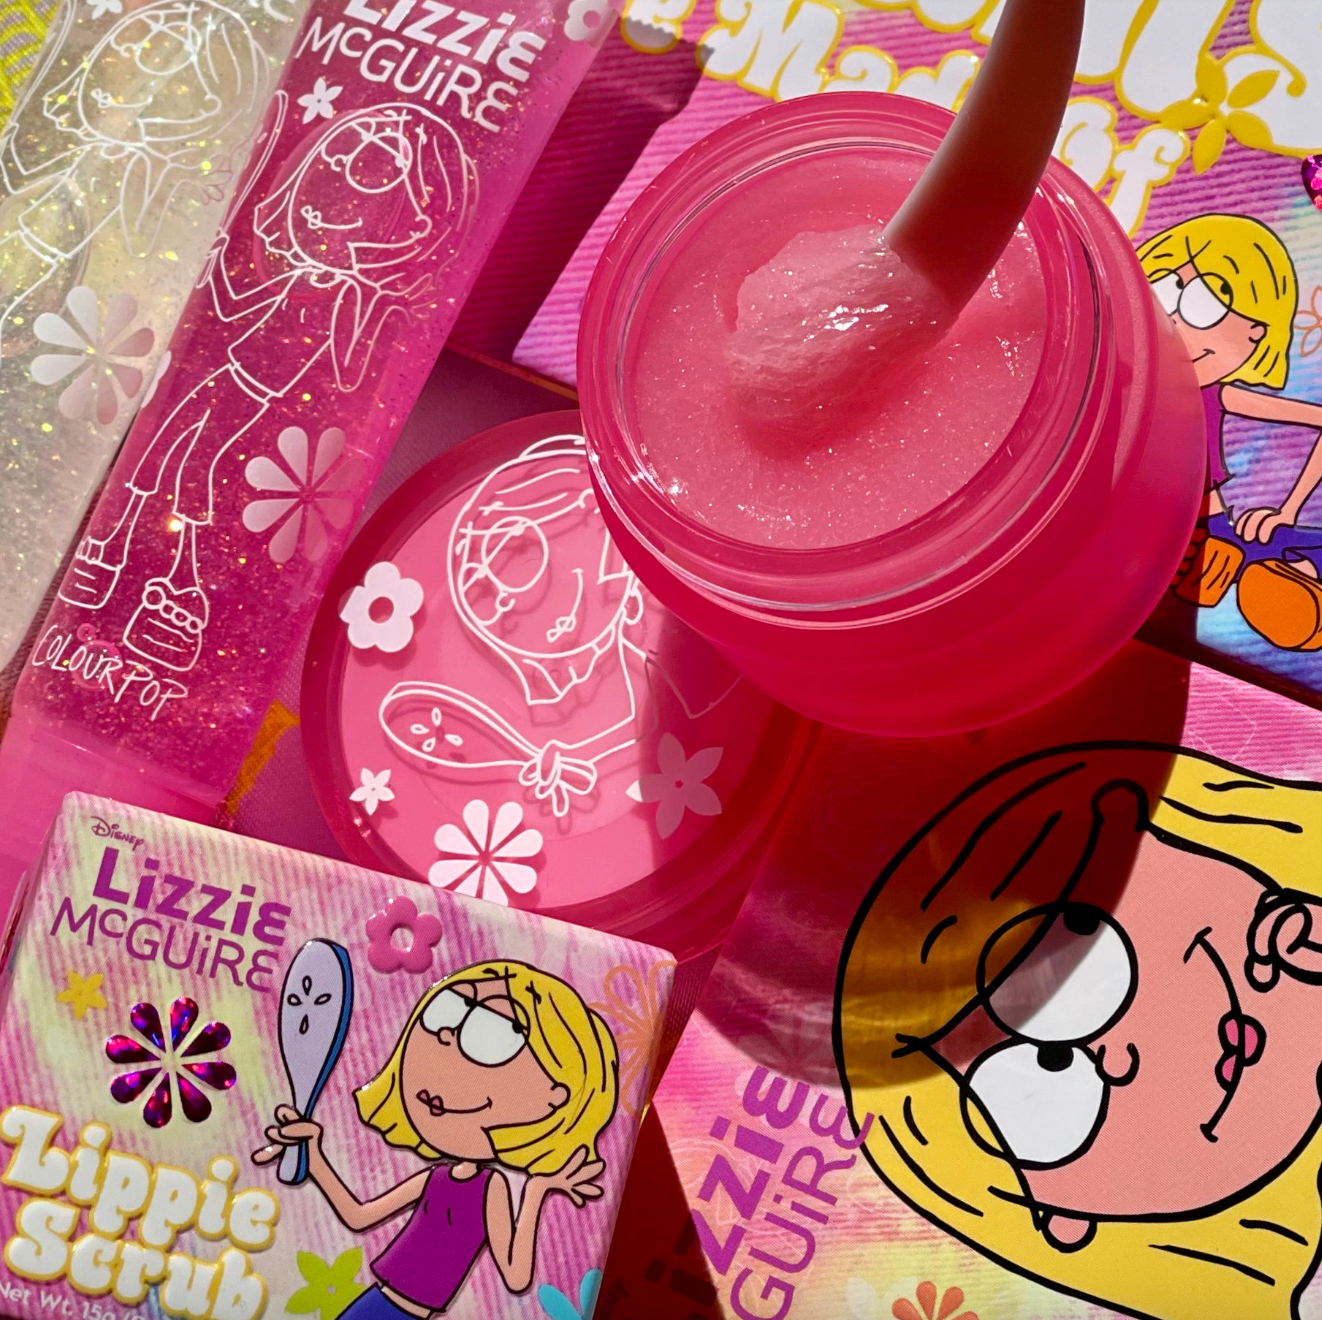 Colourpop Lizzie McGuire Collection Lippie Scrub in "Bubblegum Pop"